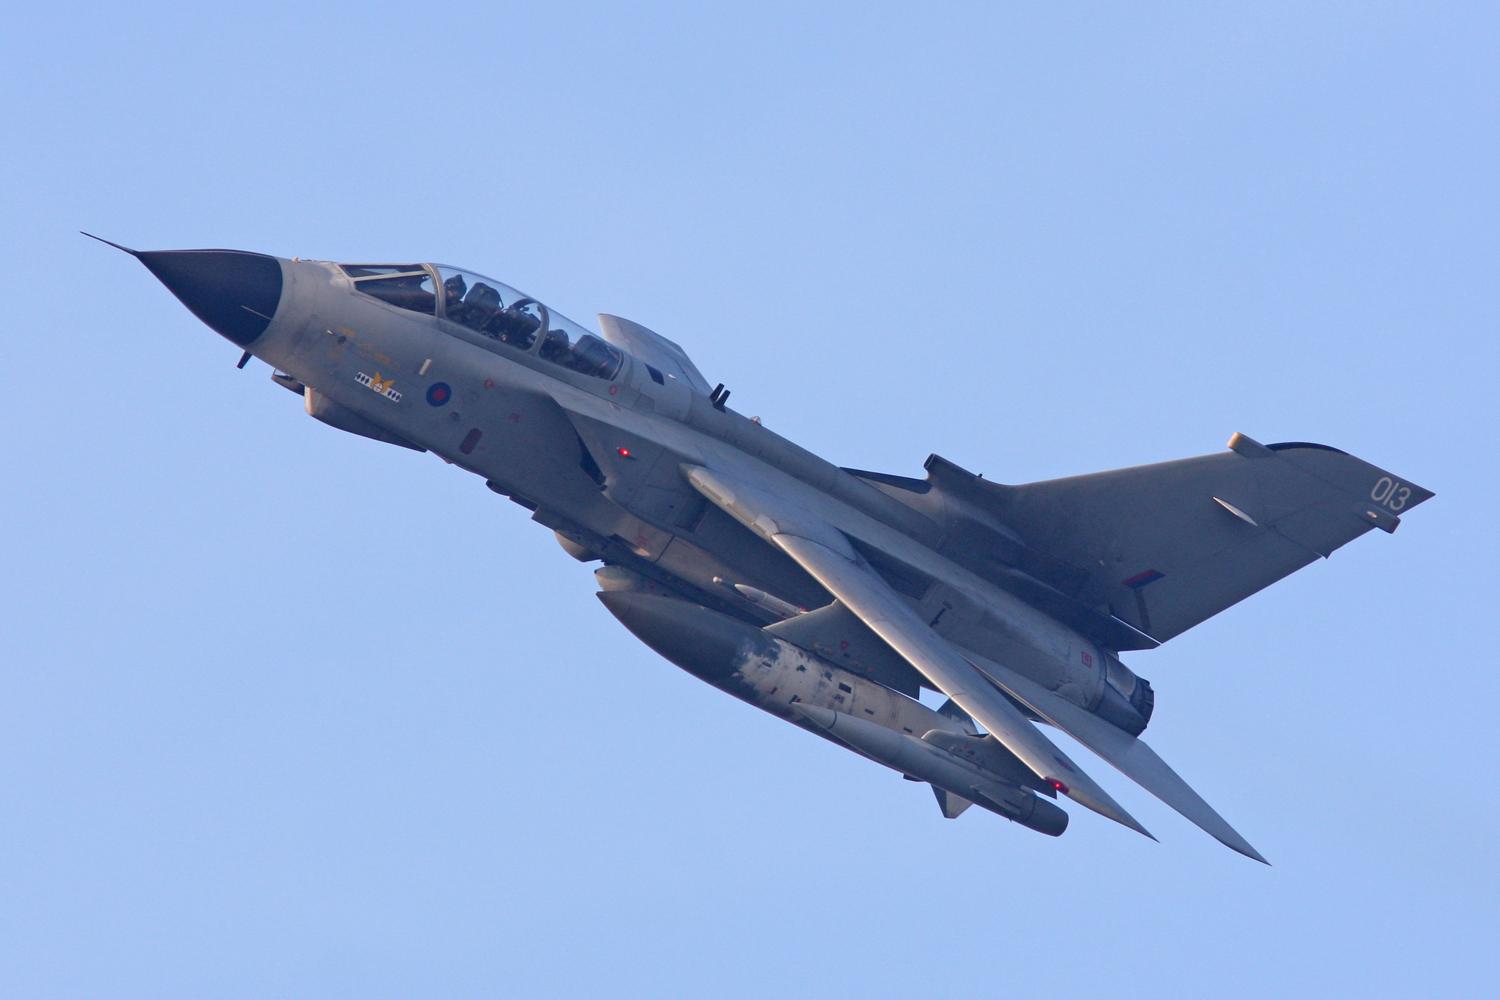 Tornado GR.4’s RAF Marham